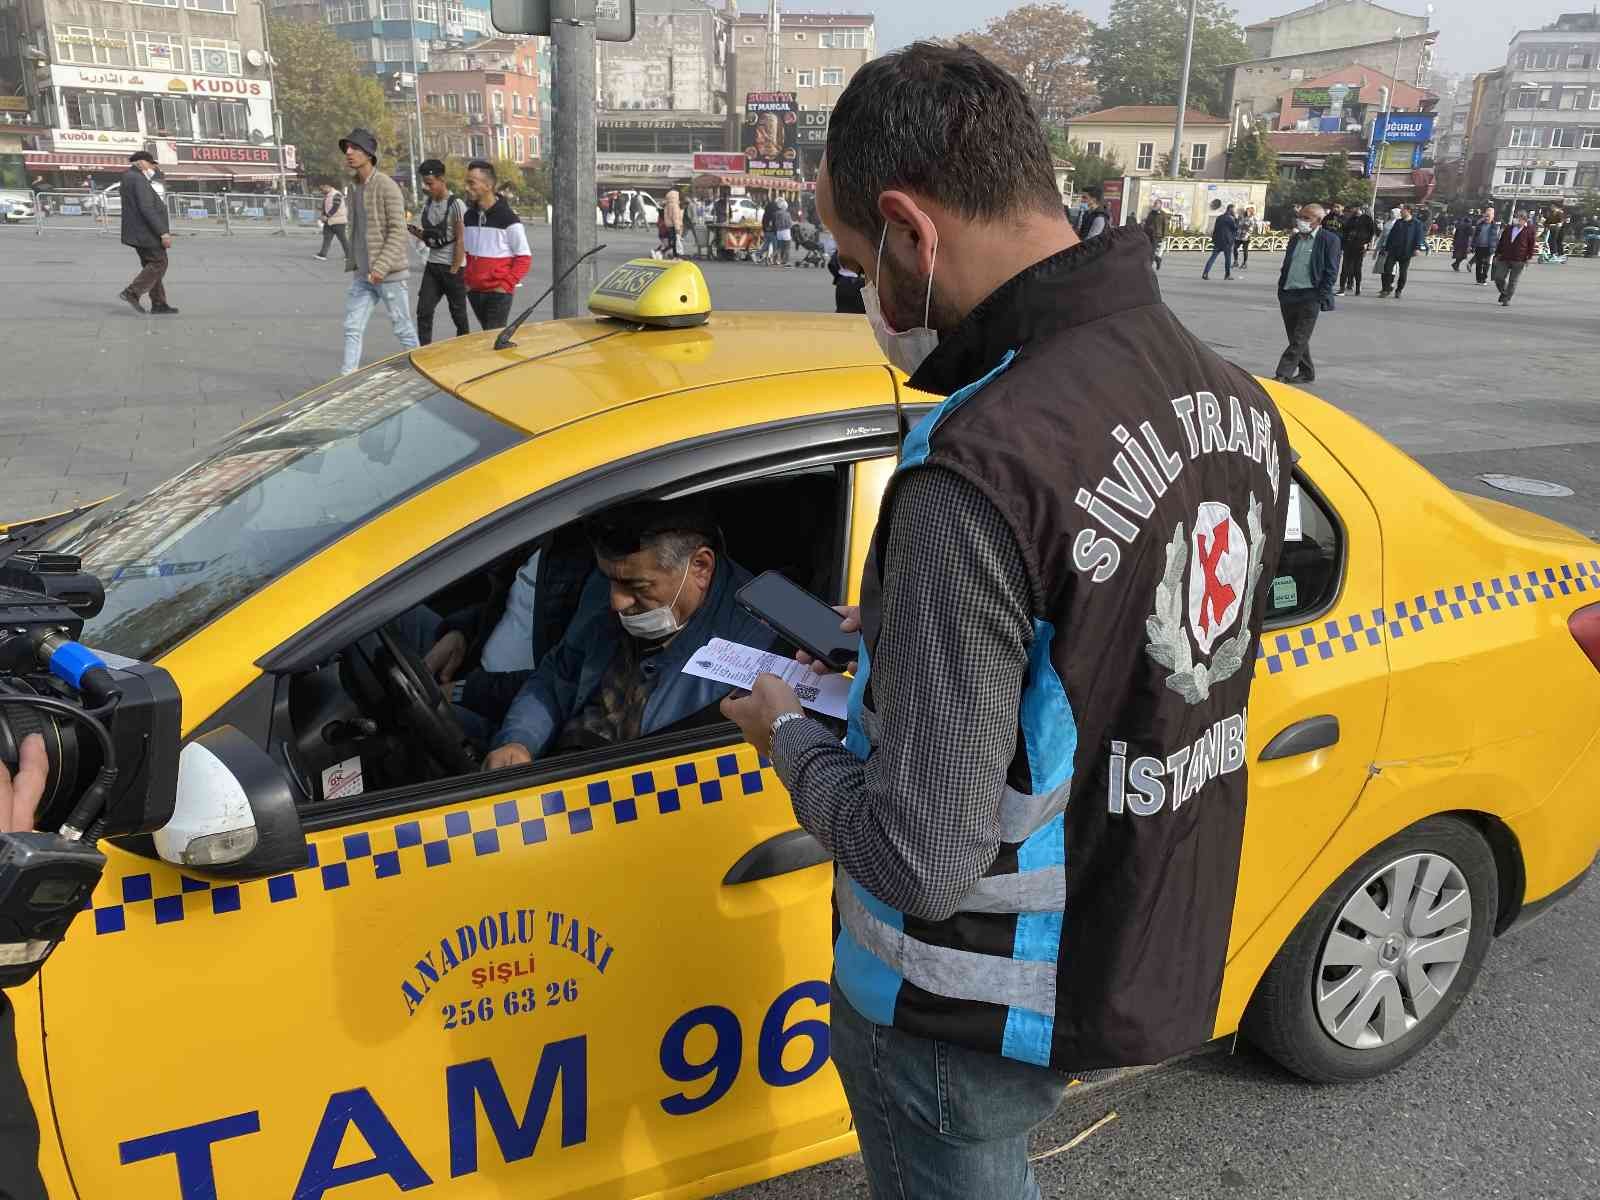 İstanbul’da 30 yıllık taksici meslektaşlarına isyan etti #istanbul